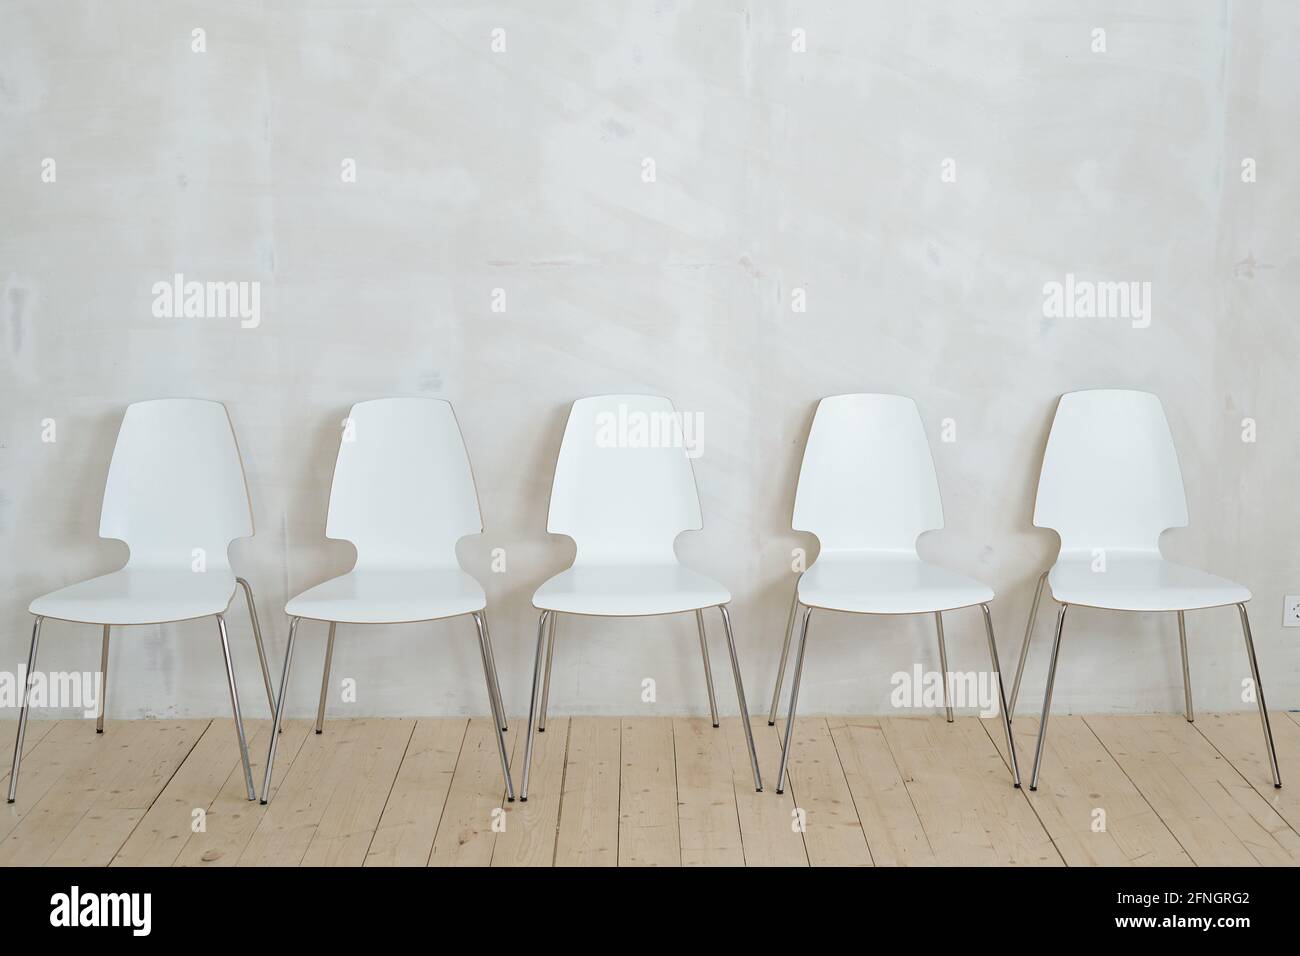 Reihe von weißen Plastikstühlen auf Metallbeinen platziert Parkett gegen graue Wand Stockfoto